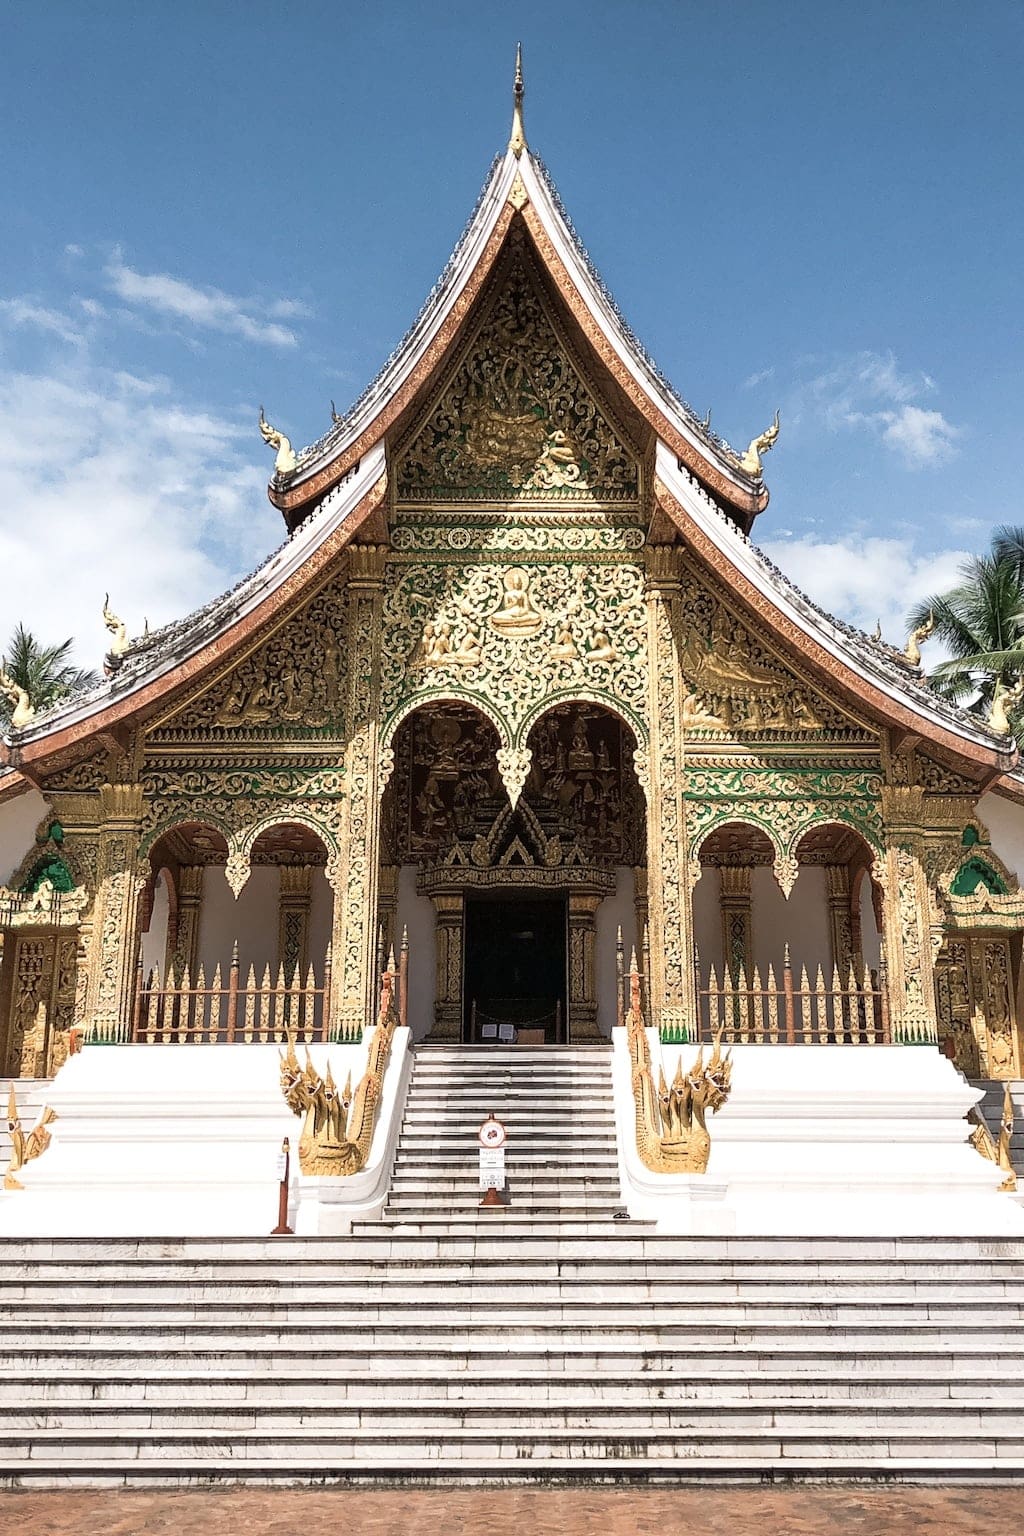 Top 8 Things to Do in Luang Prabang, Laos